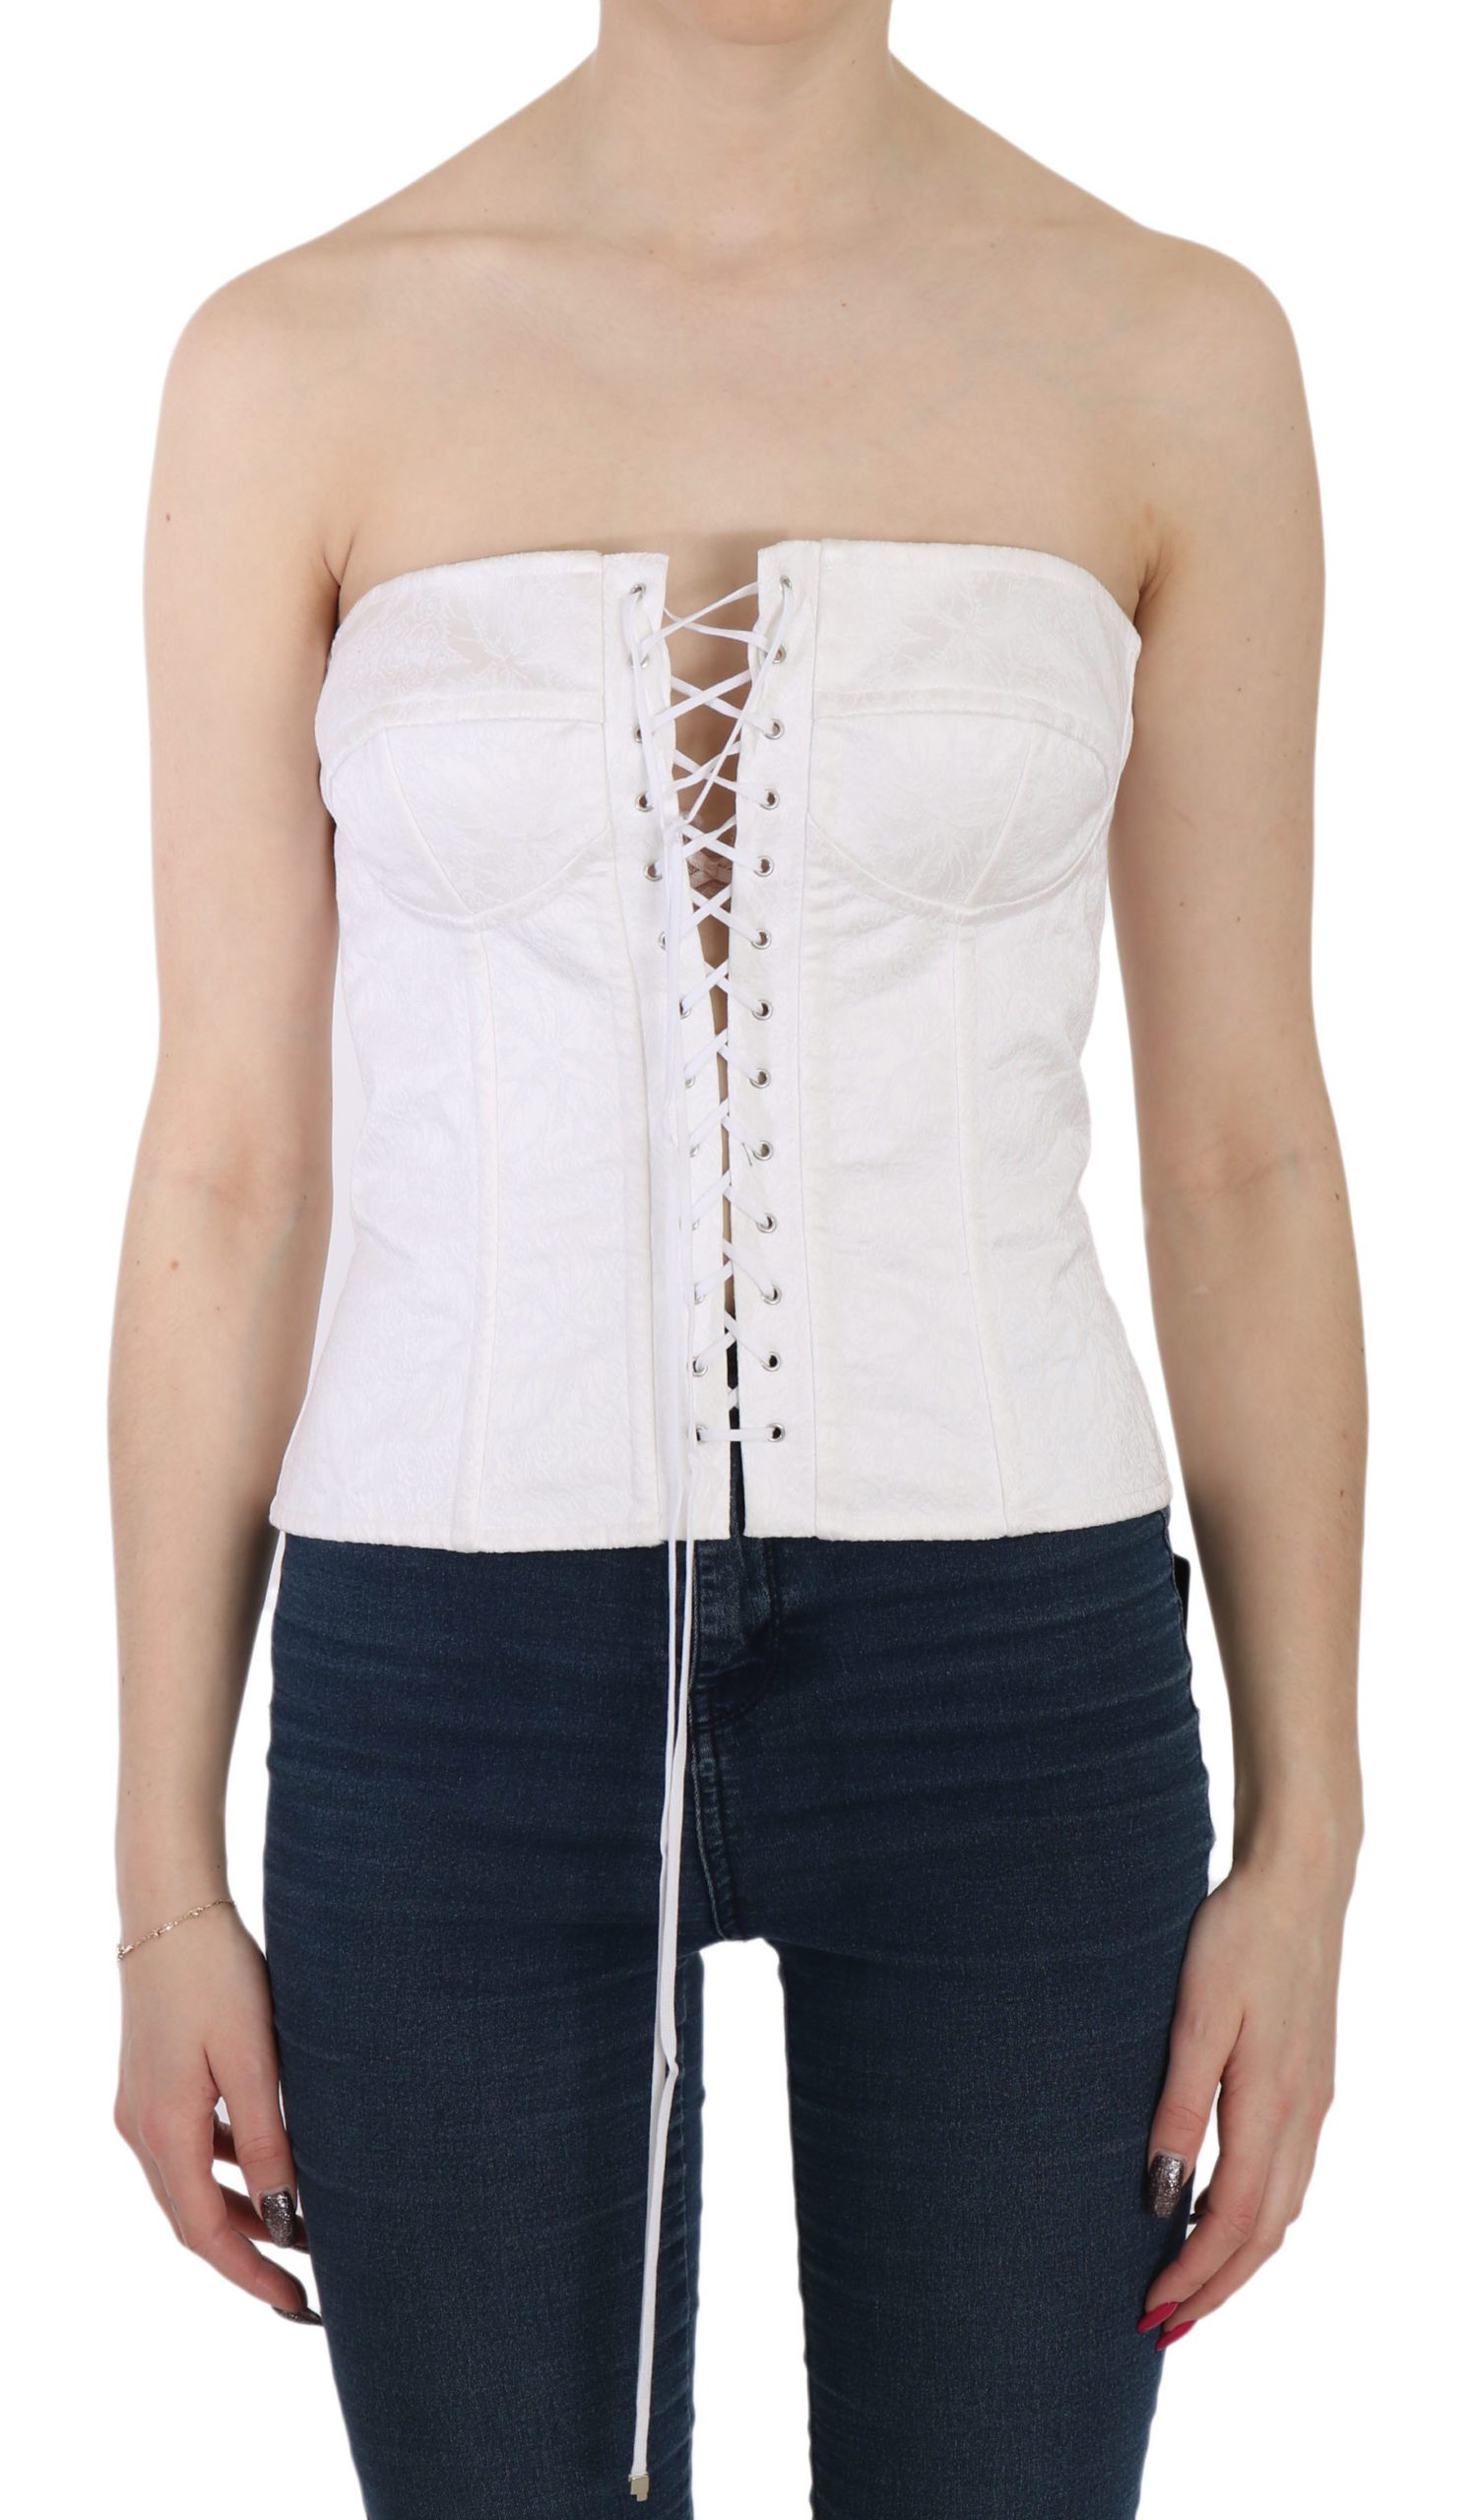 Dolce & Gabbana Women's Strapless Corset Top White TSH3398 - IT46|XL